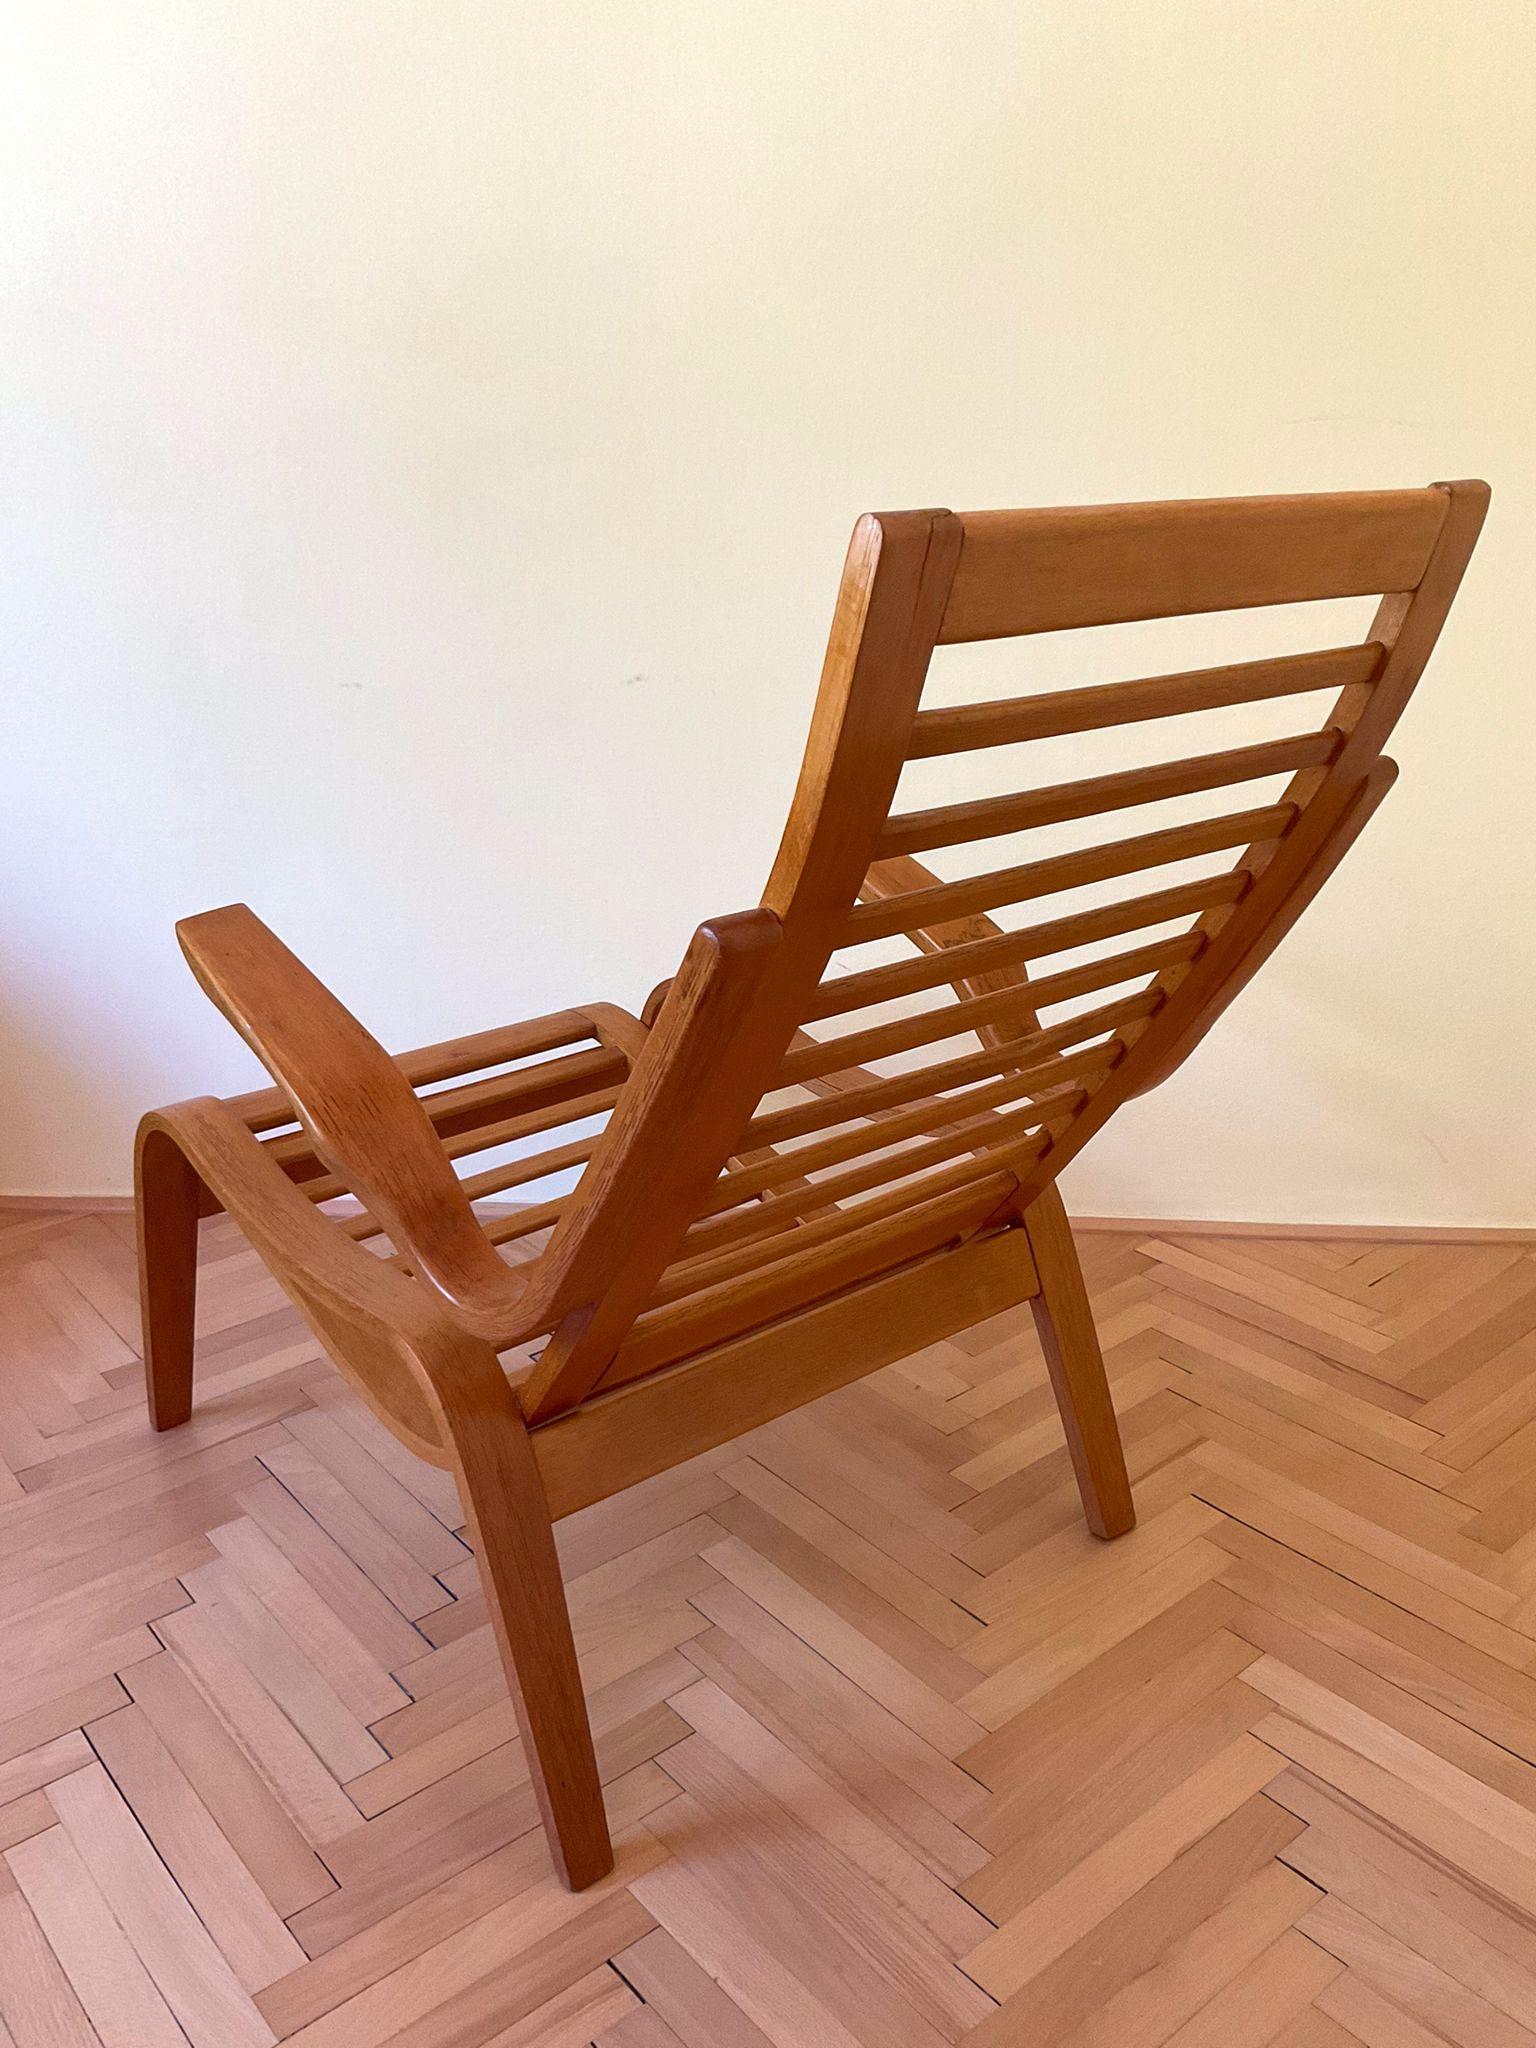 Ce magnifique fauteuil en hêtre courbé de Jan Beeche est l'un de ses modèles les plus rares.
Fauteuil idéal pour le bien-être et la relaxation.
Le fauteuil a été entièrement restauré. Nous disposons d'une autre pièce sur demande.